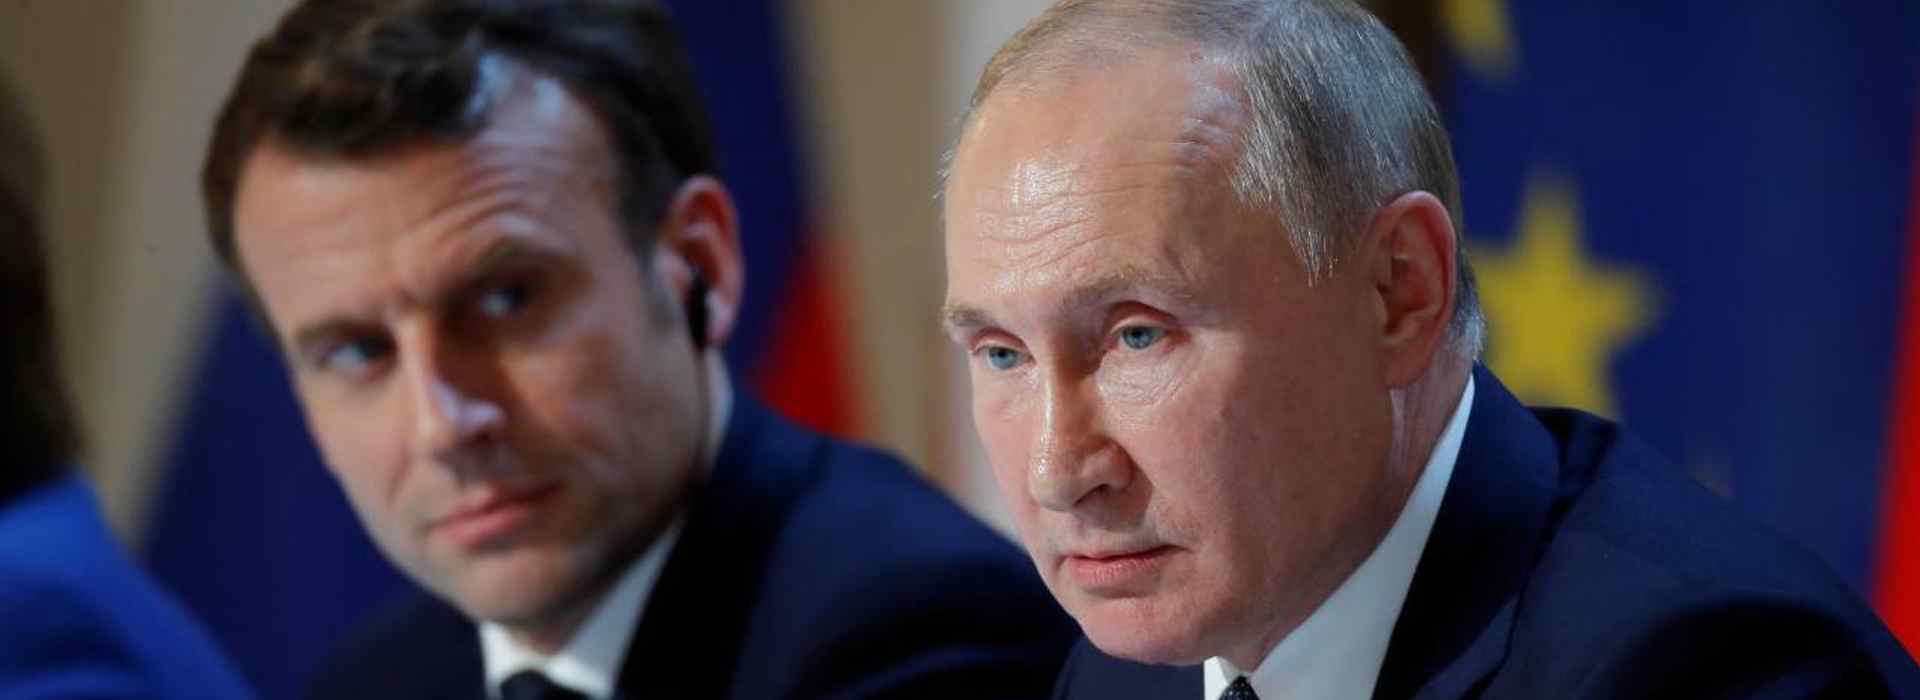 La Francia avverte: "In Ucraina il peggio deve ancora arrivare"